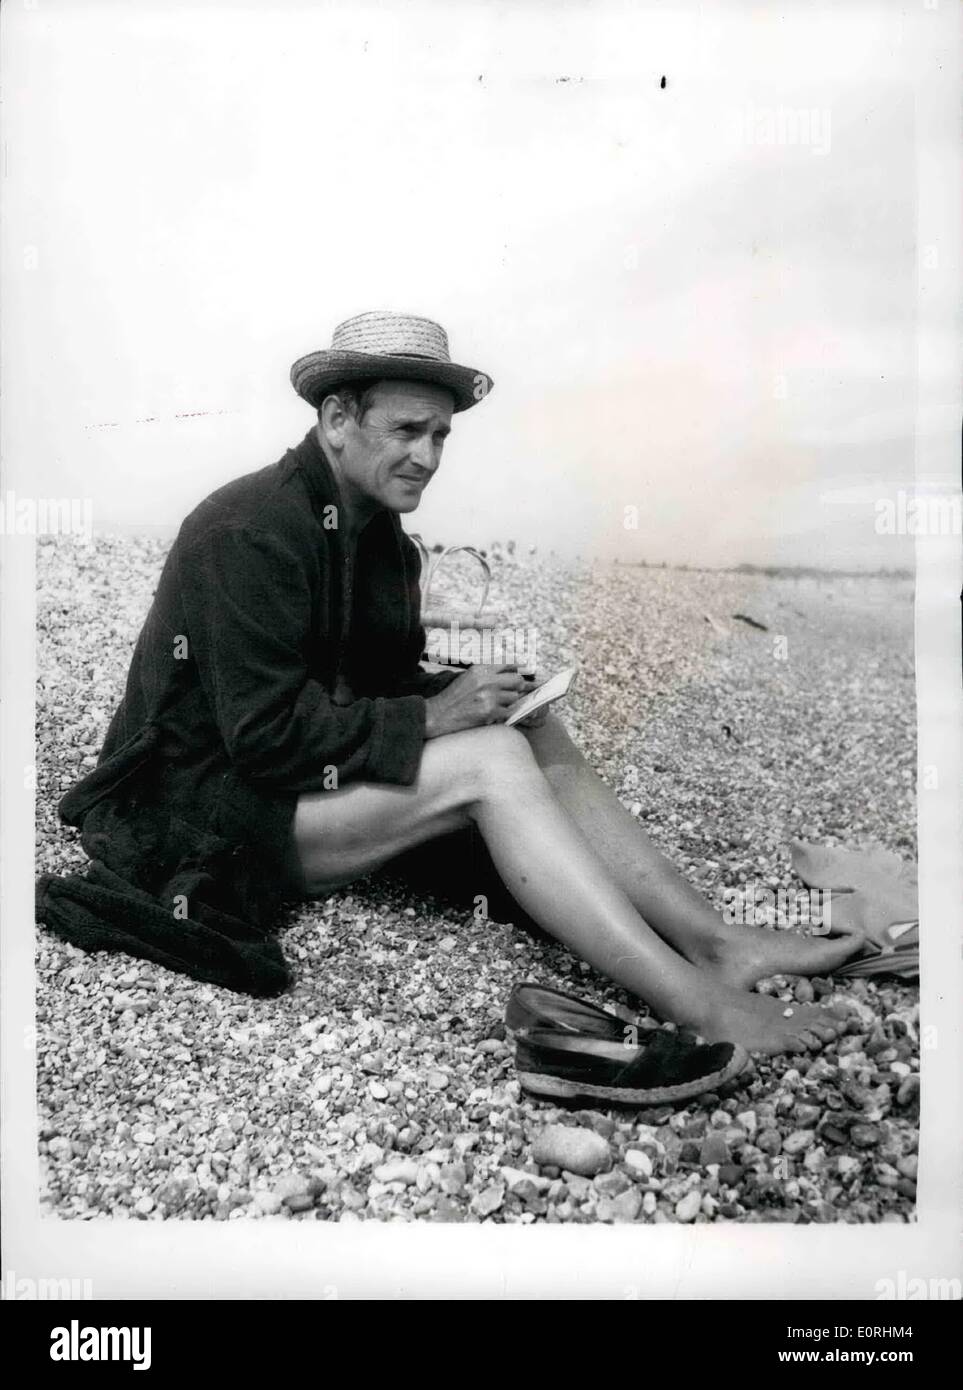 8. August 1959 - berühmte Künstler feiert seinen 56. Geburtstag mit einem erfrischenden Bad im Meer: Graham Sutherland, der berühmte Künstler feierte seinen 56. Geburtstag heute bei einem Bad im Meer in der Nähe von Bexhill Sussex, 35 Meilen von seinem Haus in Trotiscliffe in Kent Graham Sutherland hat viele berühmte Persönlichkeiten, darunter Sir Winston Churchill, Lord Beaverbrook, Somerset Maugham etc. gemalt. Foto zeigt, dass Graham Sutherland ein paar Skizzen macht beim Ausruhen am Strand von Bexhill, Sussex, heute. seinem 56. Geburtstag. Stockfoto